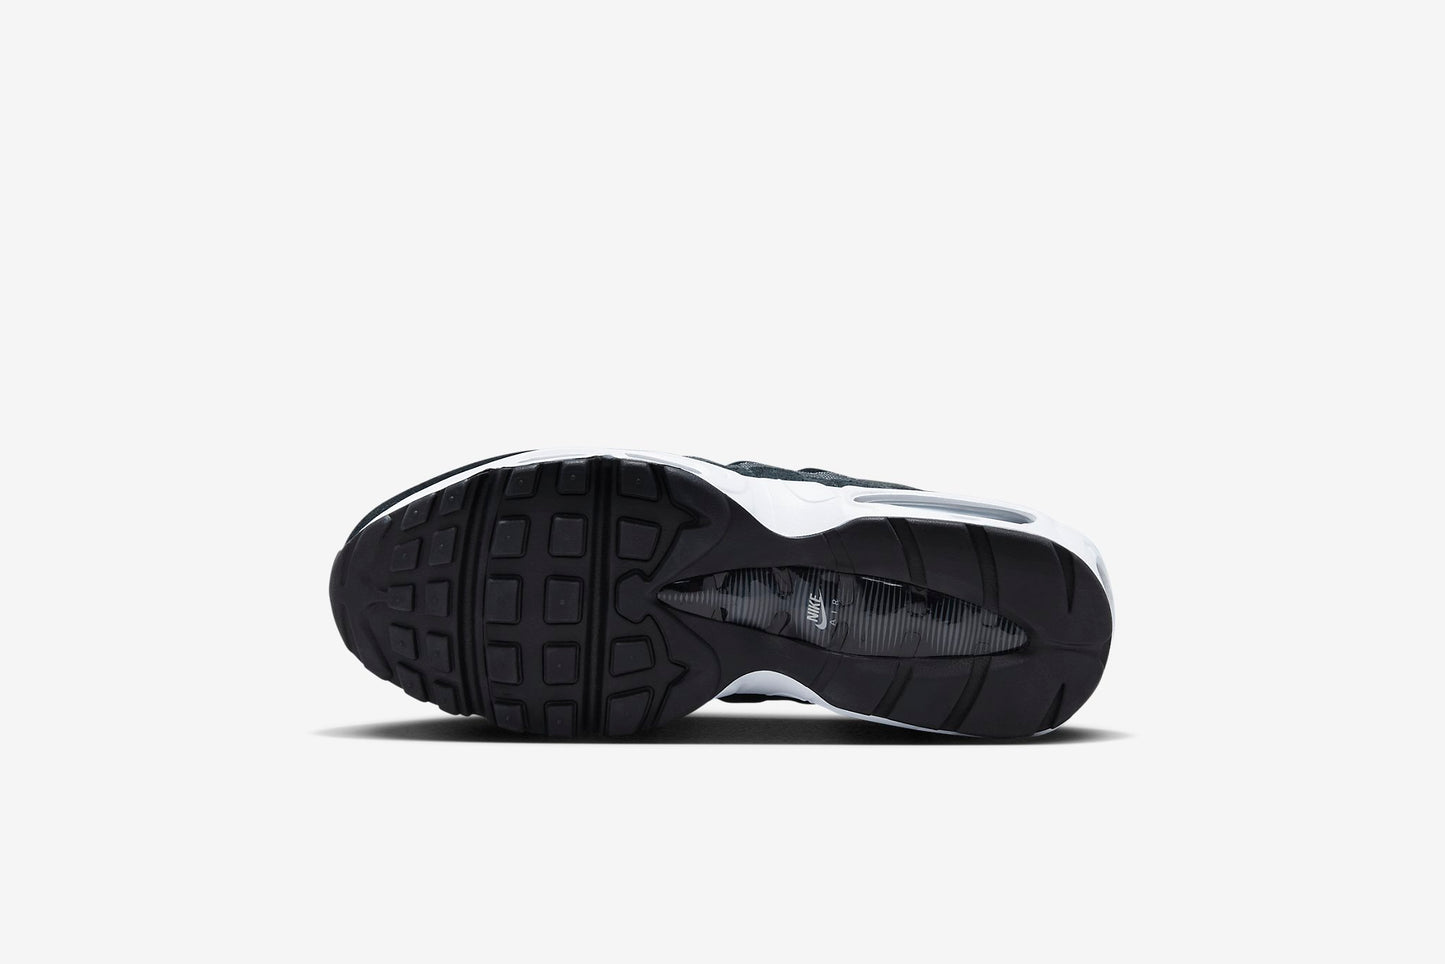 Nike "Air Max 95" M - Black / Pure Platinum / Anthracite